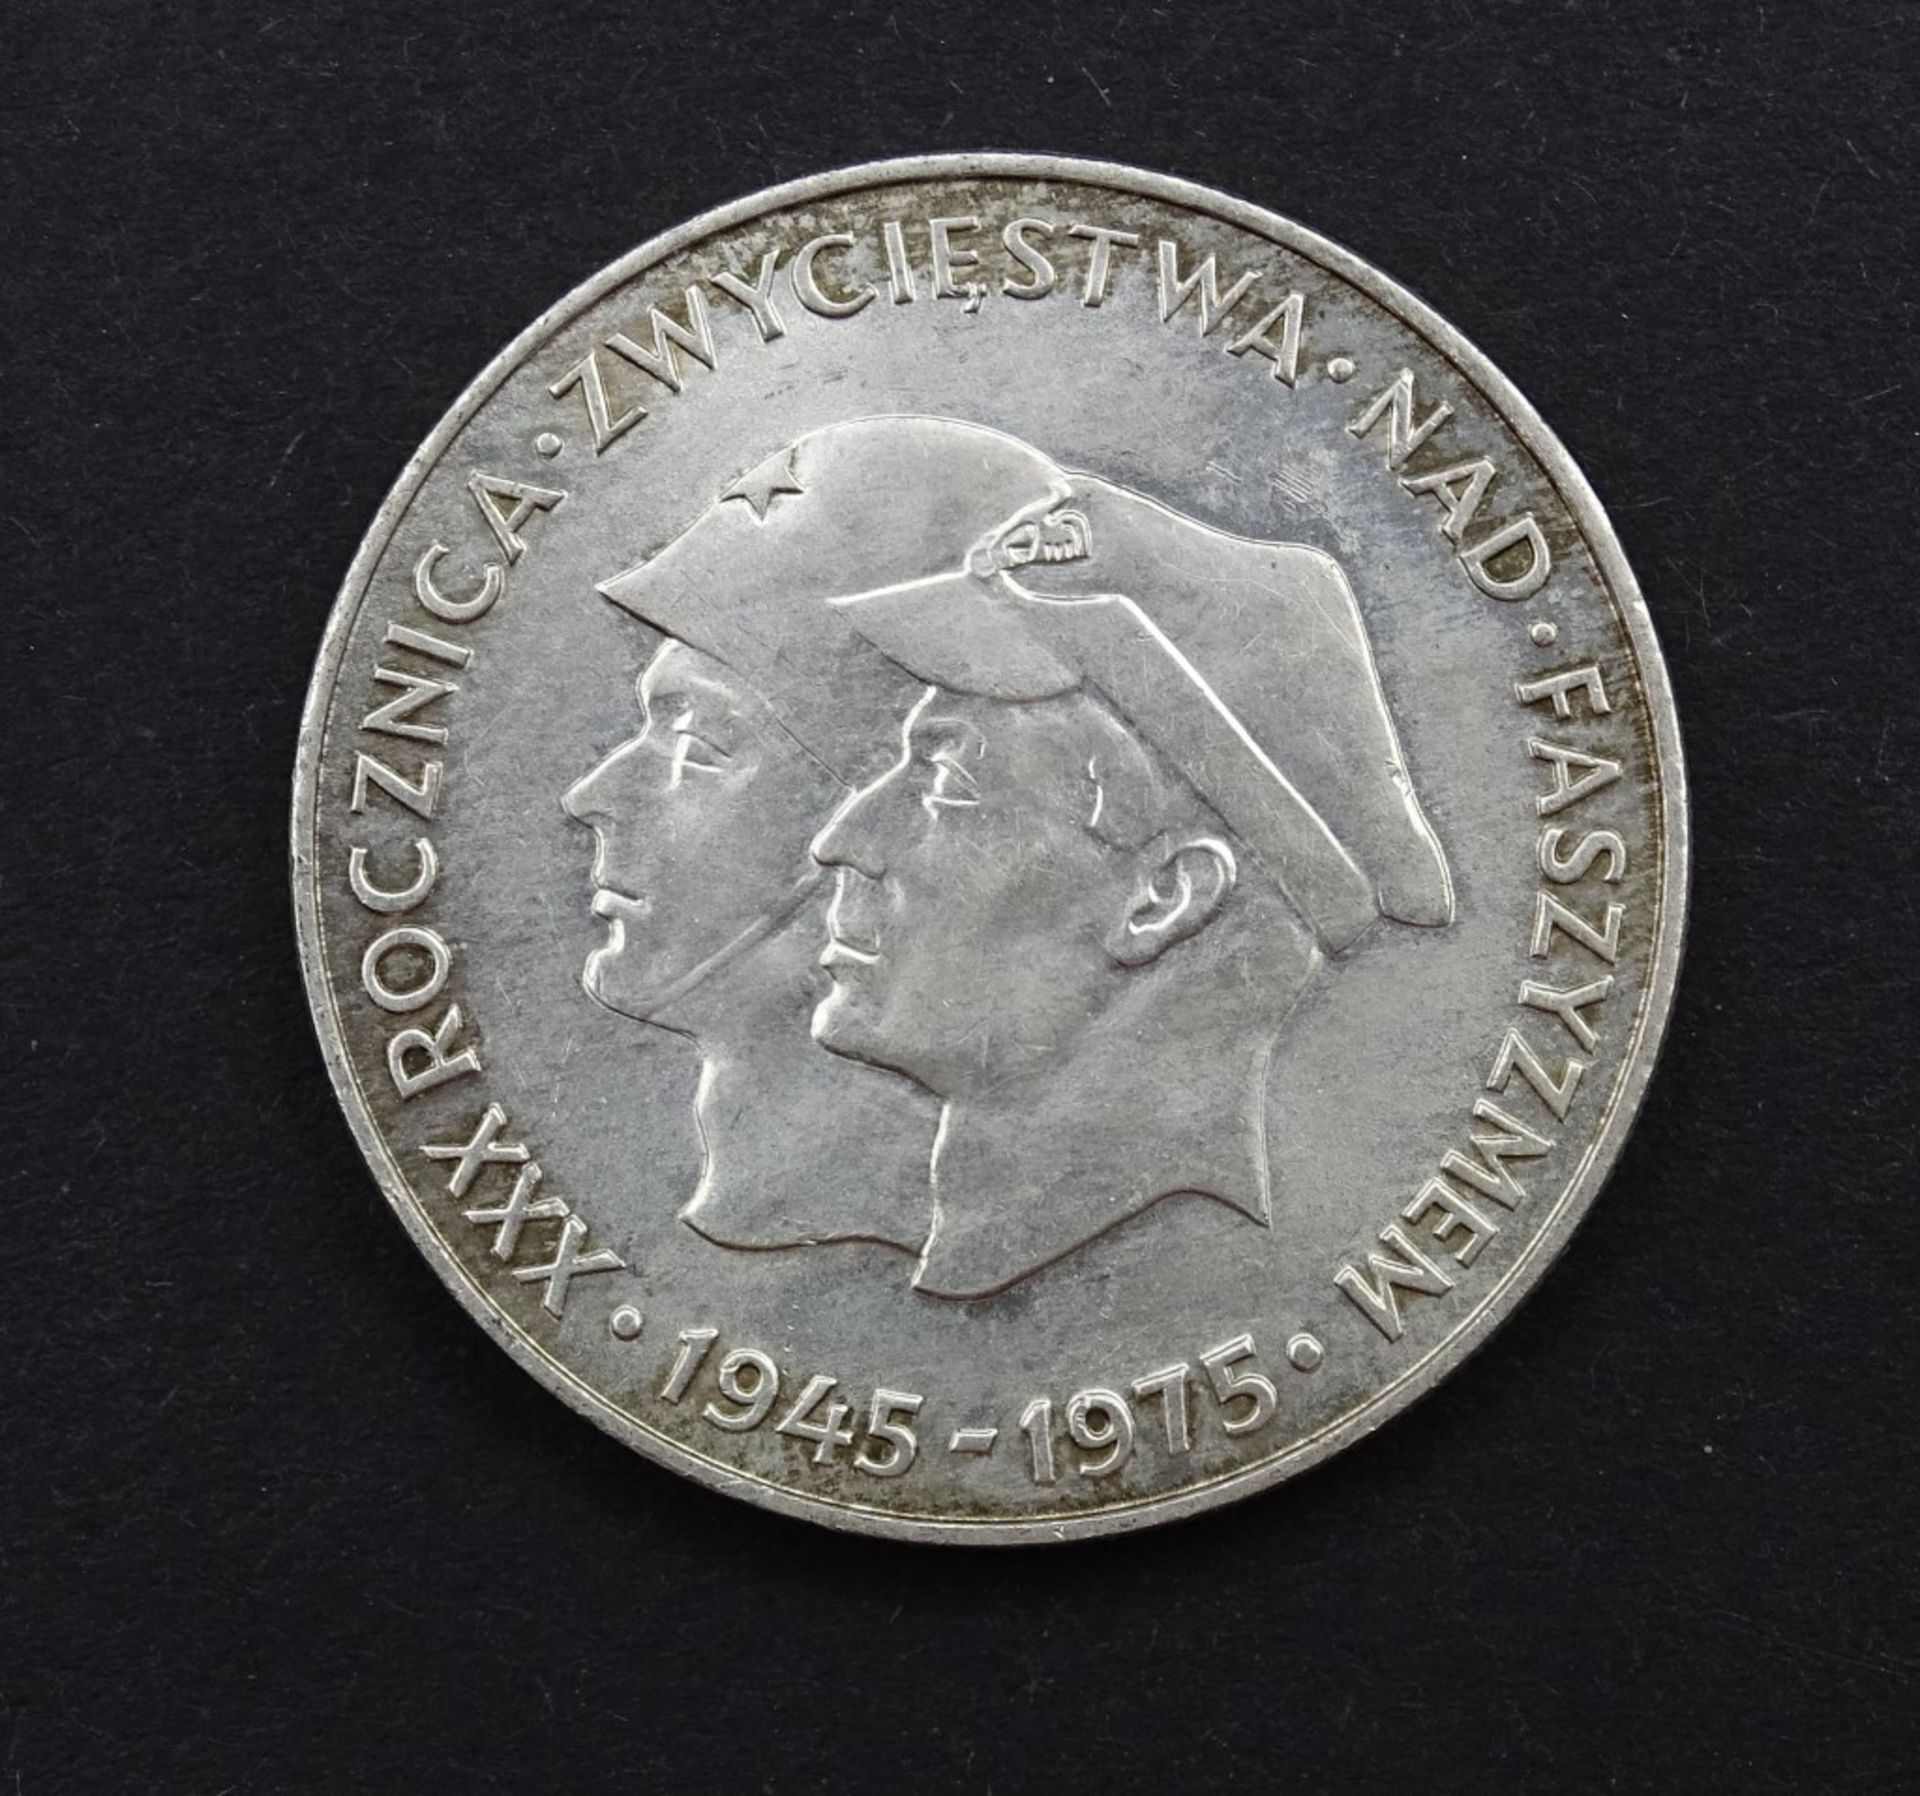 200 Zloty Polen 1975